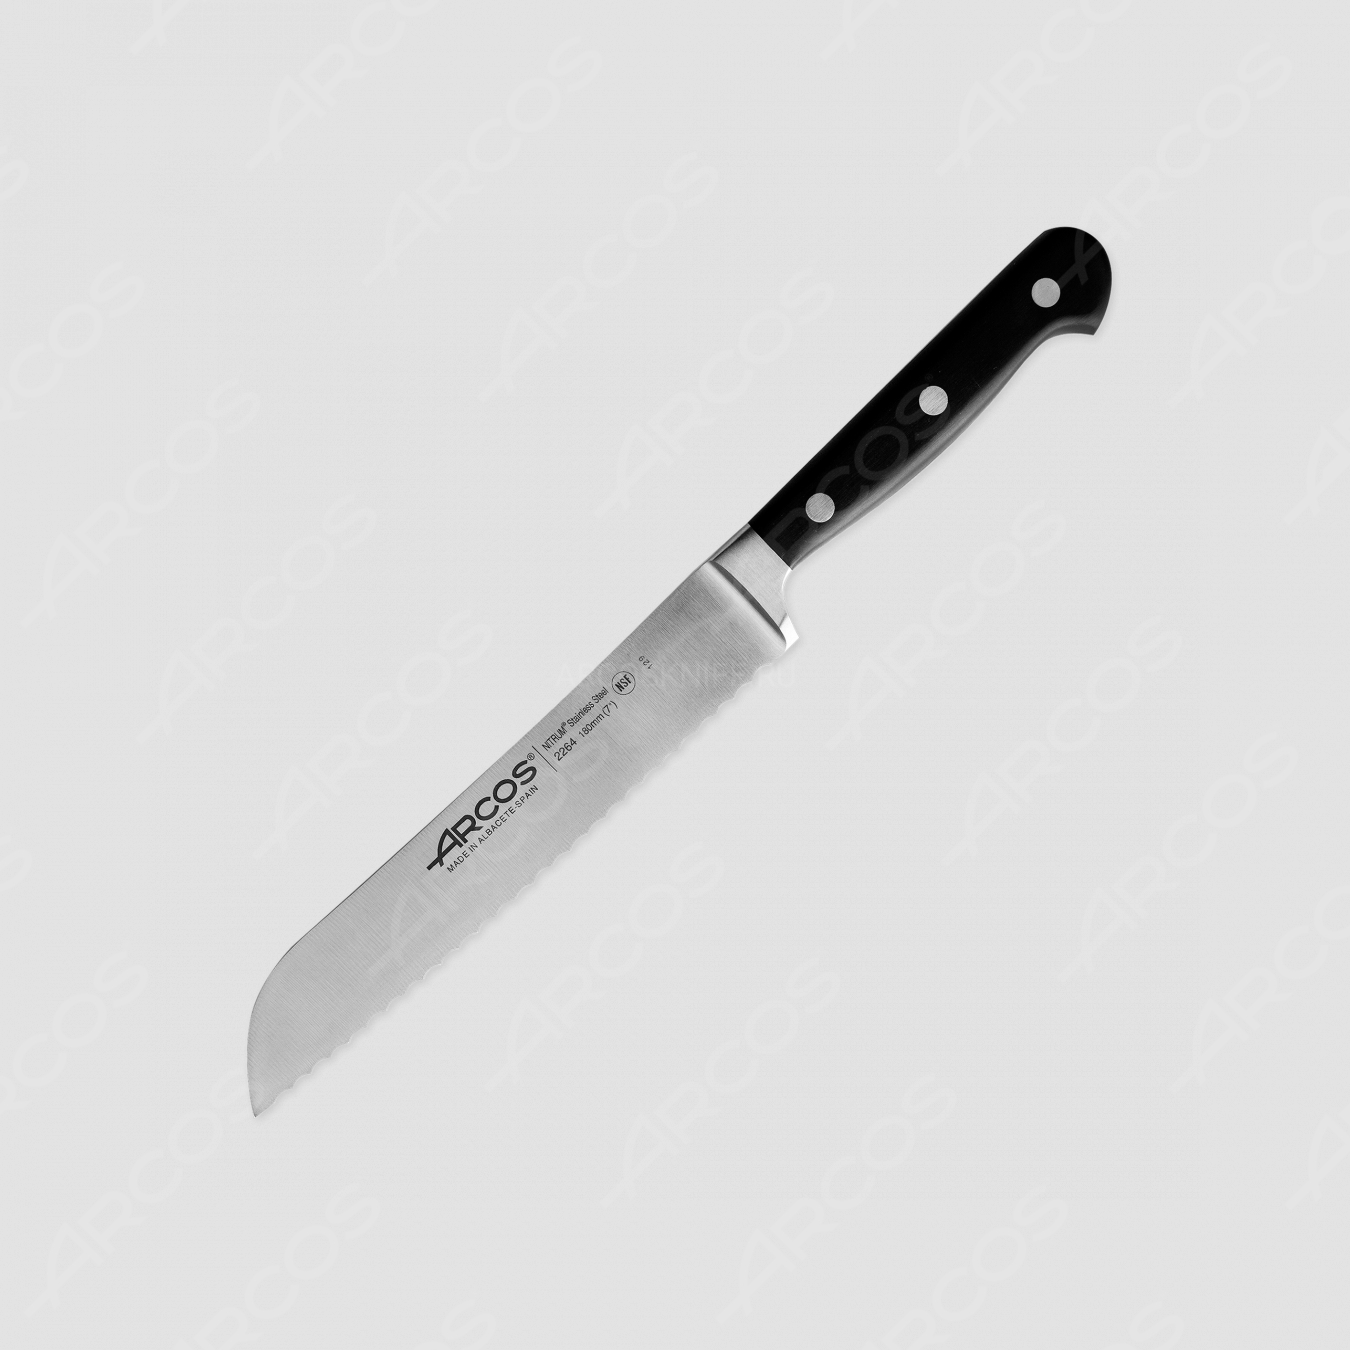 Нож кухонный для хлеба 18 см, серия Opera, ARCOS, Испания